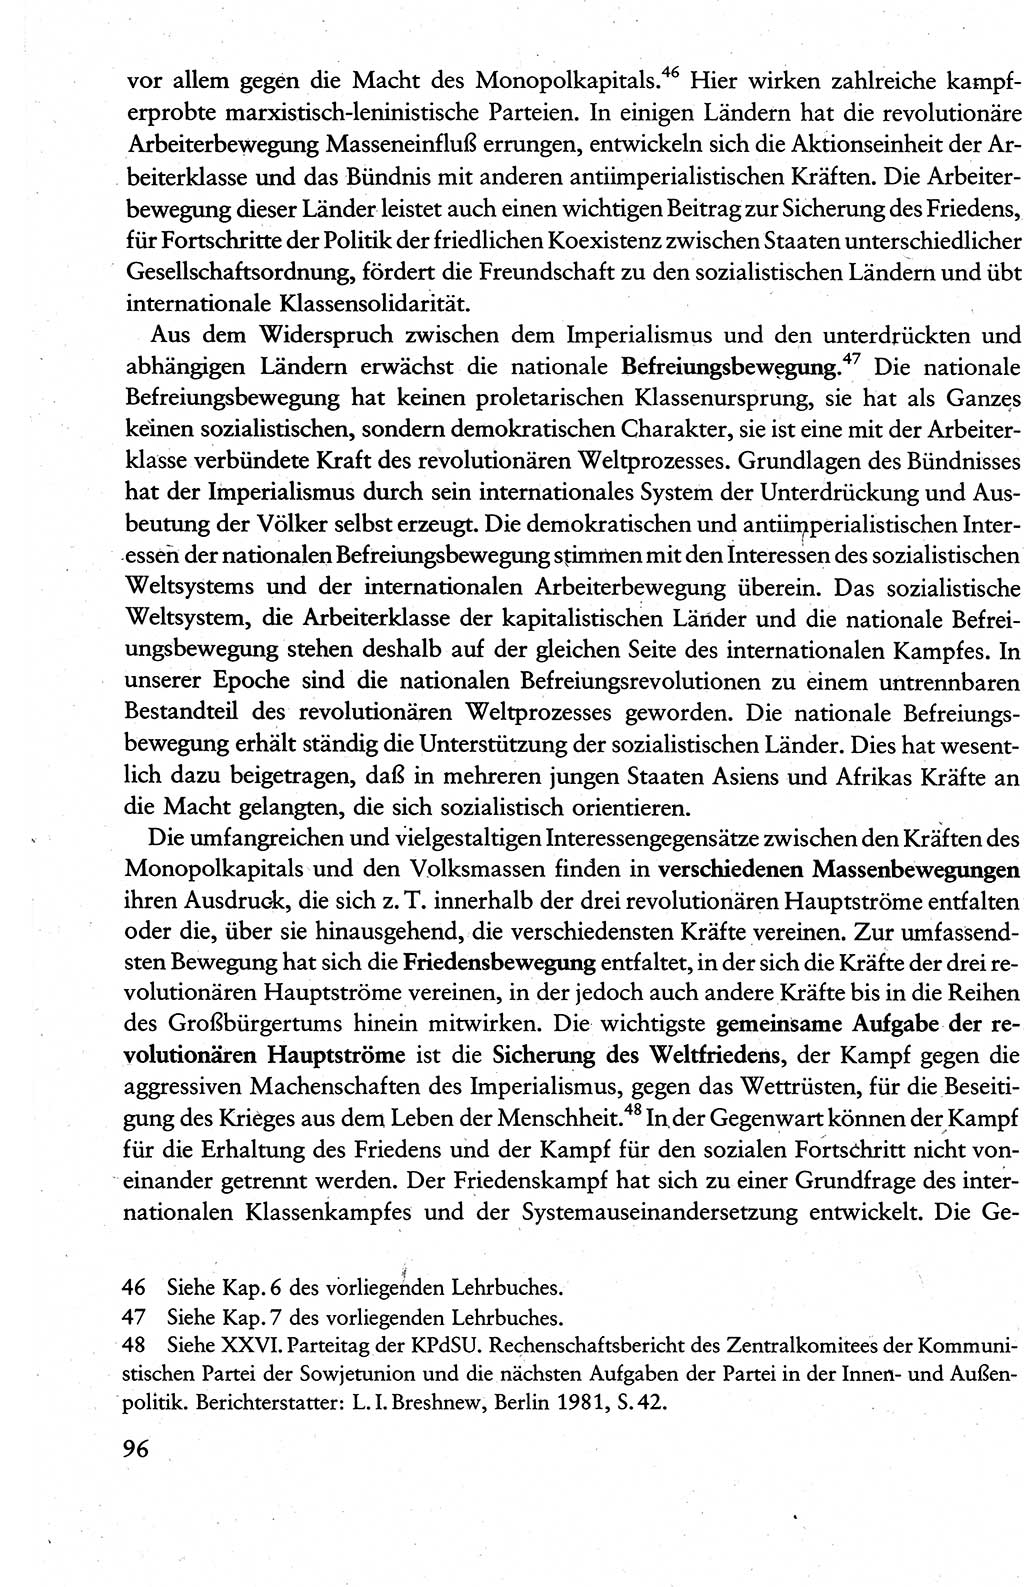 Wissenschaftlicher Kommunismus [Deutsche Demokratische Republik (DDR)], Lehrbuch für das marxistisch-leninistische Grundlagenstudium 1983, Seite 96 (Wiss. Komm. DDR Lb. 1983, S. 96)